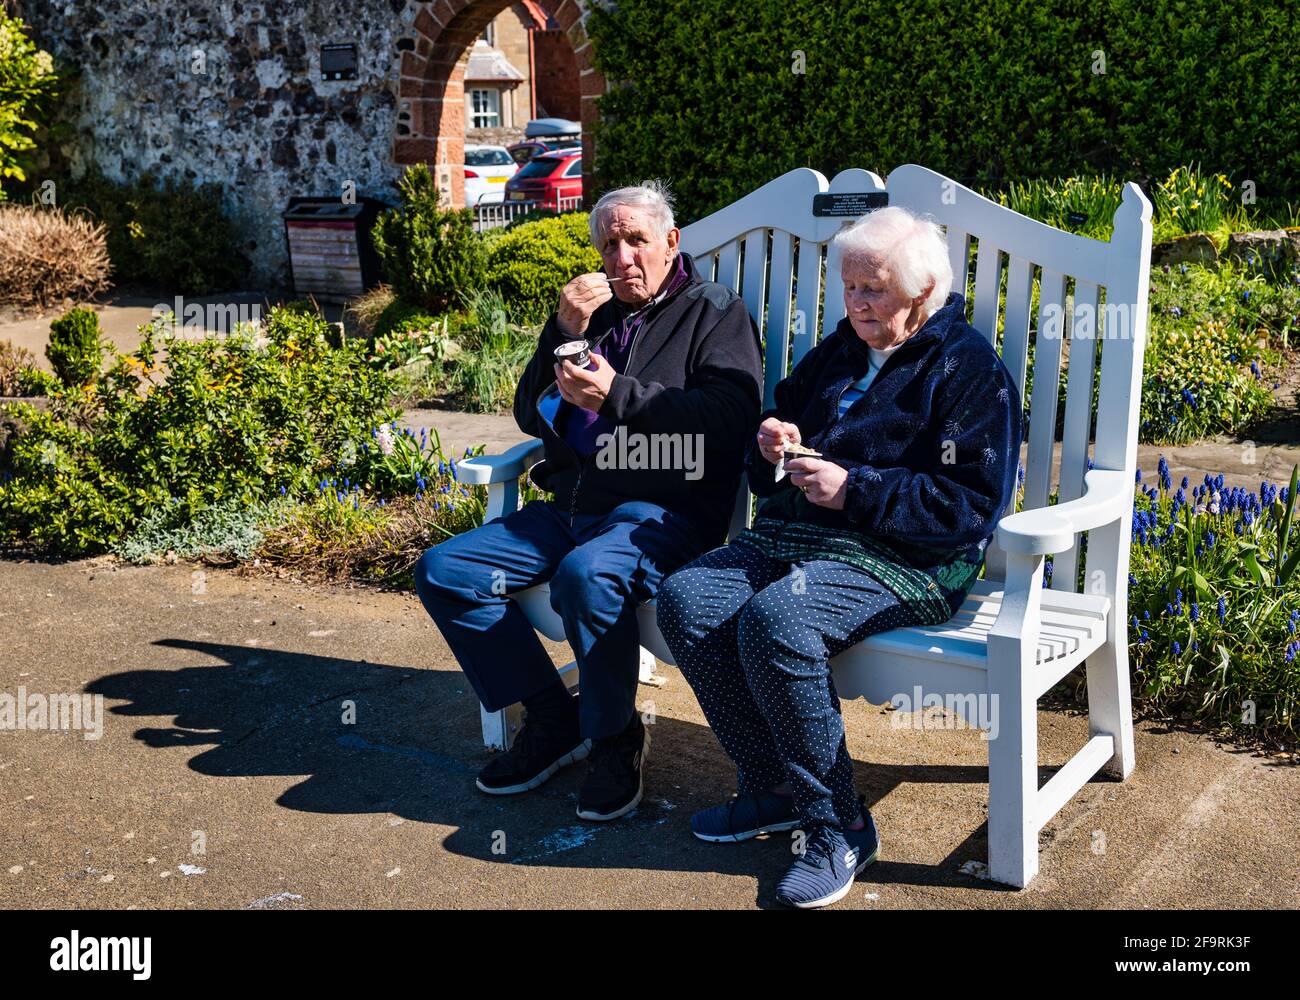 Ein älteres Paar sitzt auf der Bank und isst bei Sonnenschein Eis, Lodge Grounds Park, North Berwick, East Lothian, Schottland, VEREINIGTES KÖNIGREICH Stockfoto